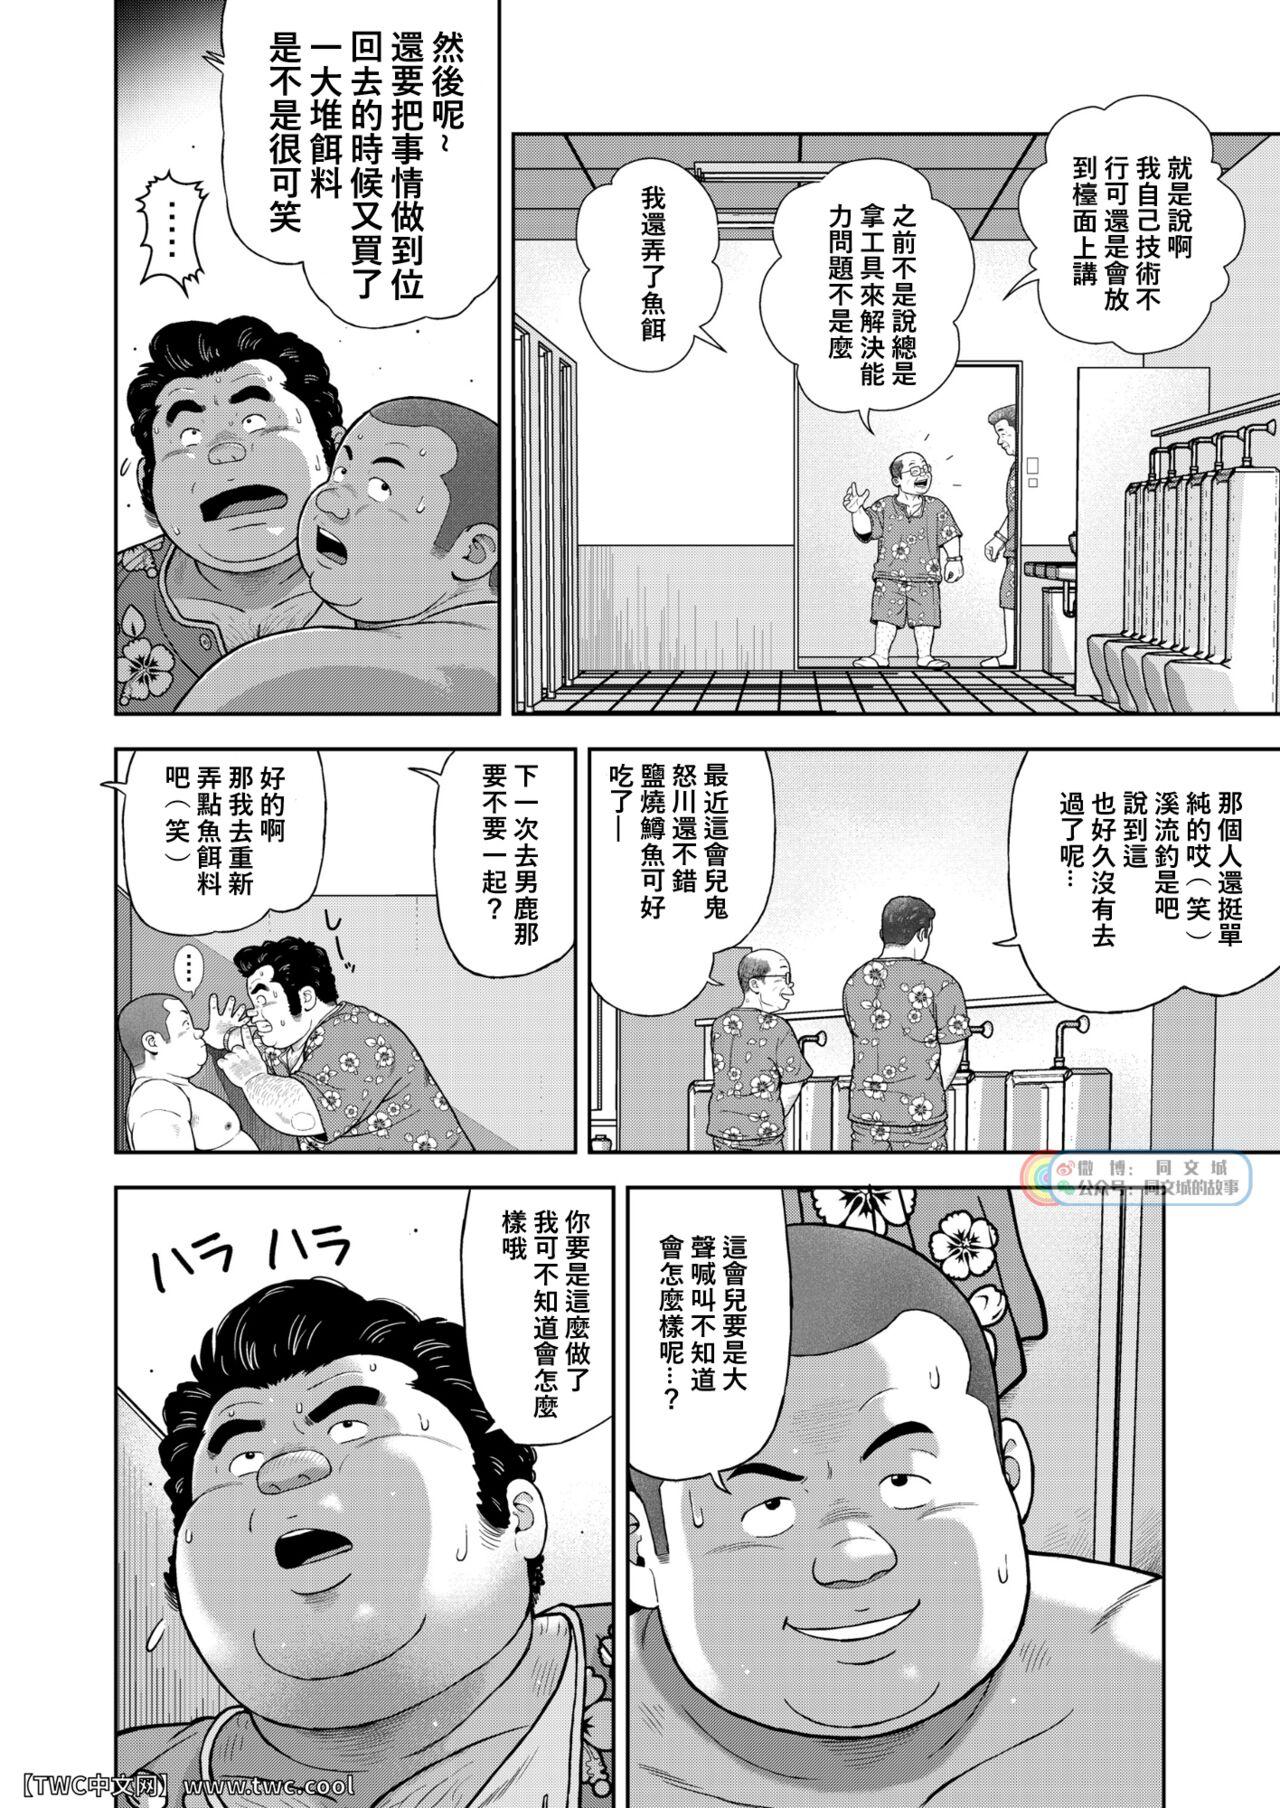 Sixtynine Kunoyu Nijyunanahatsume Anokane o Narasunohadonata - Original Peluda - Page 12